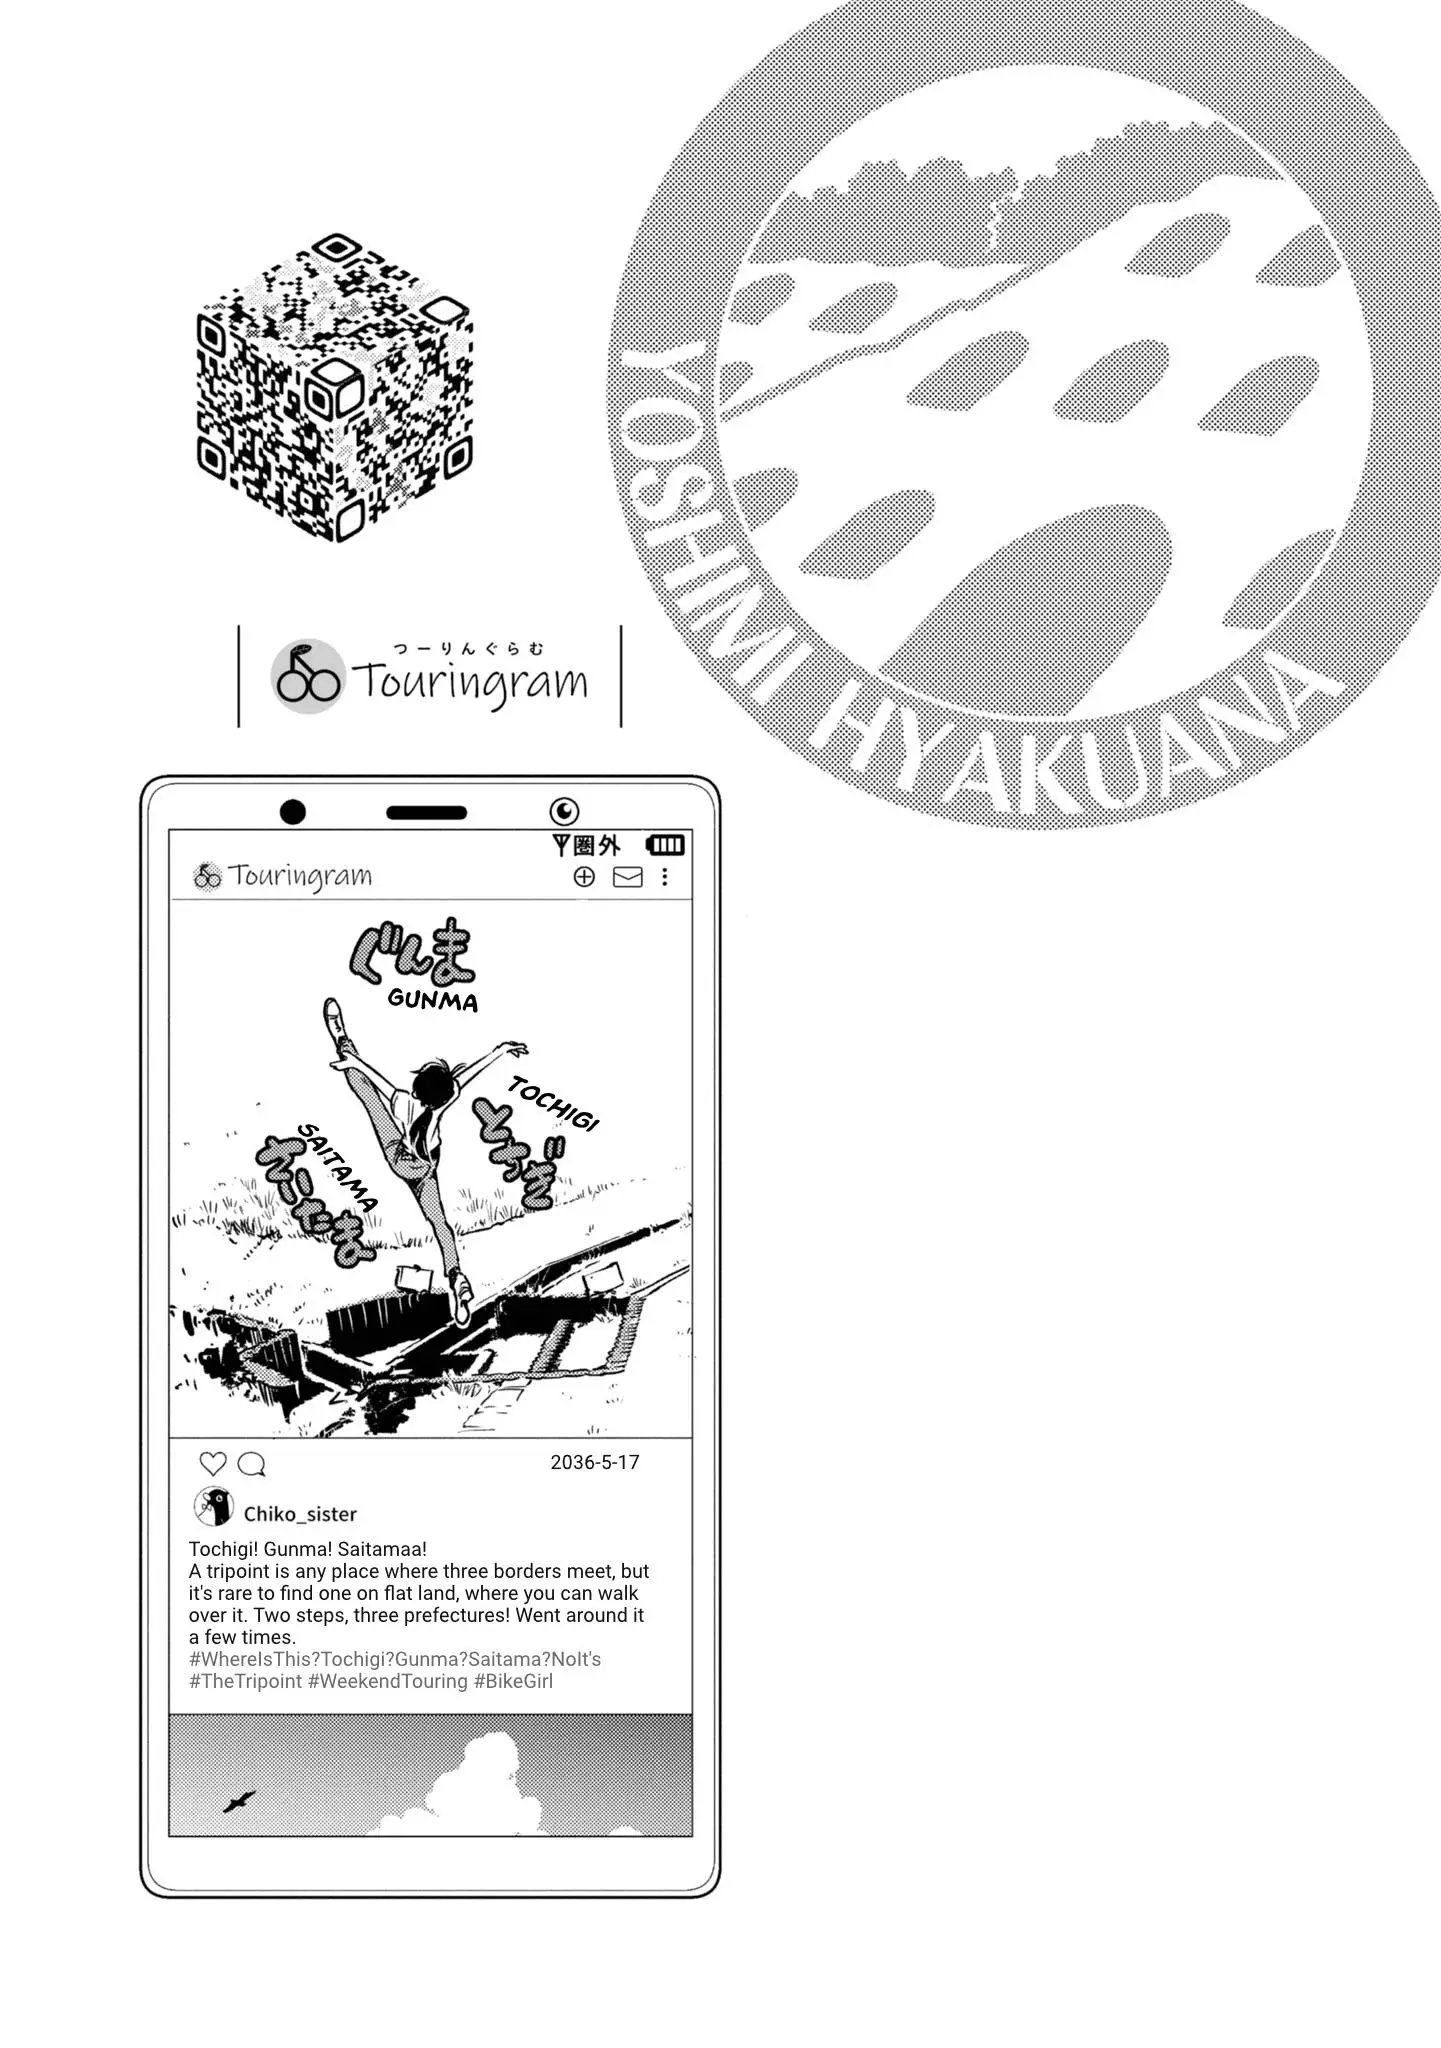 Shuumatsu Touring - 22 page 30-42792b90